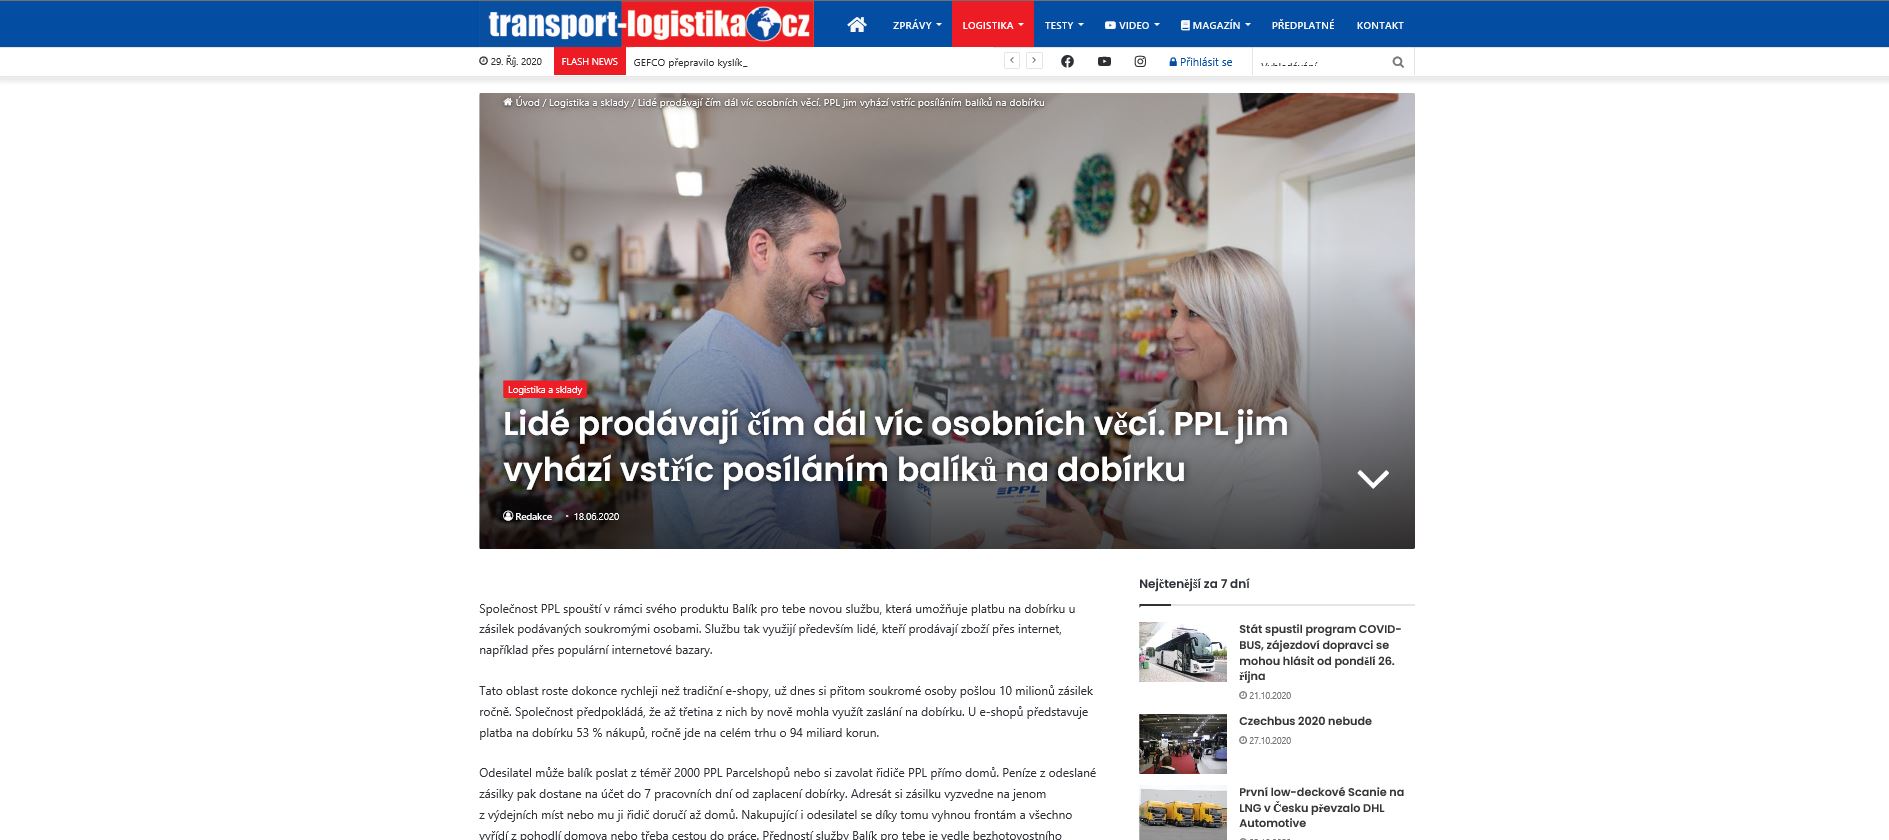 Článek transport-logistika.cz